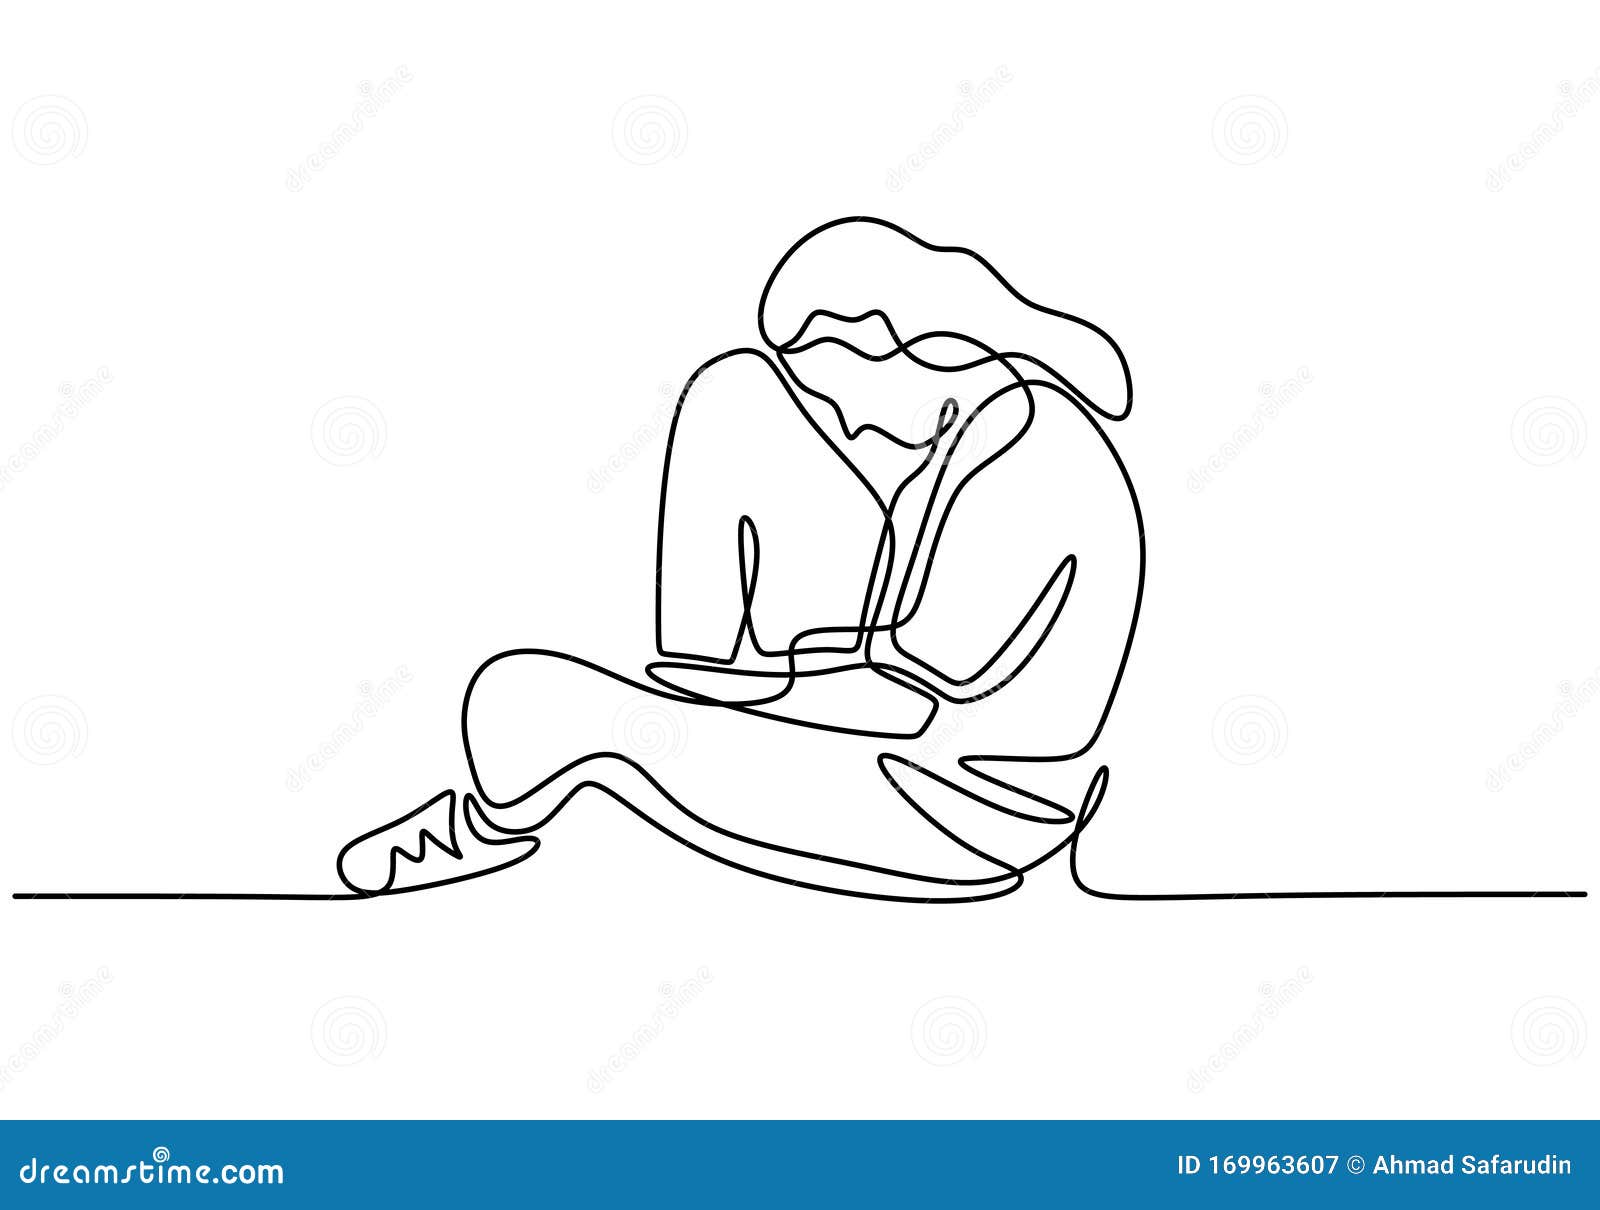 Desenho de menina triste sentada sozinha